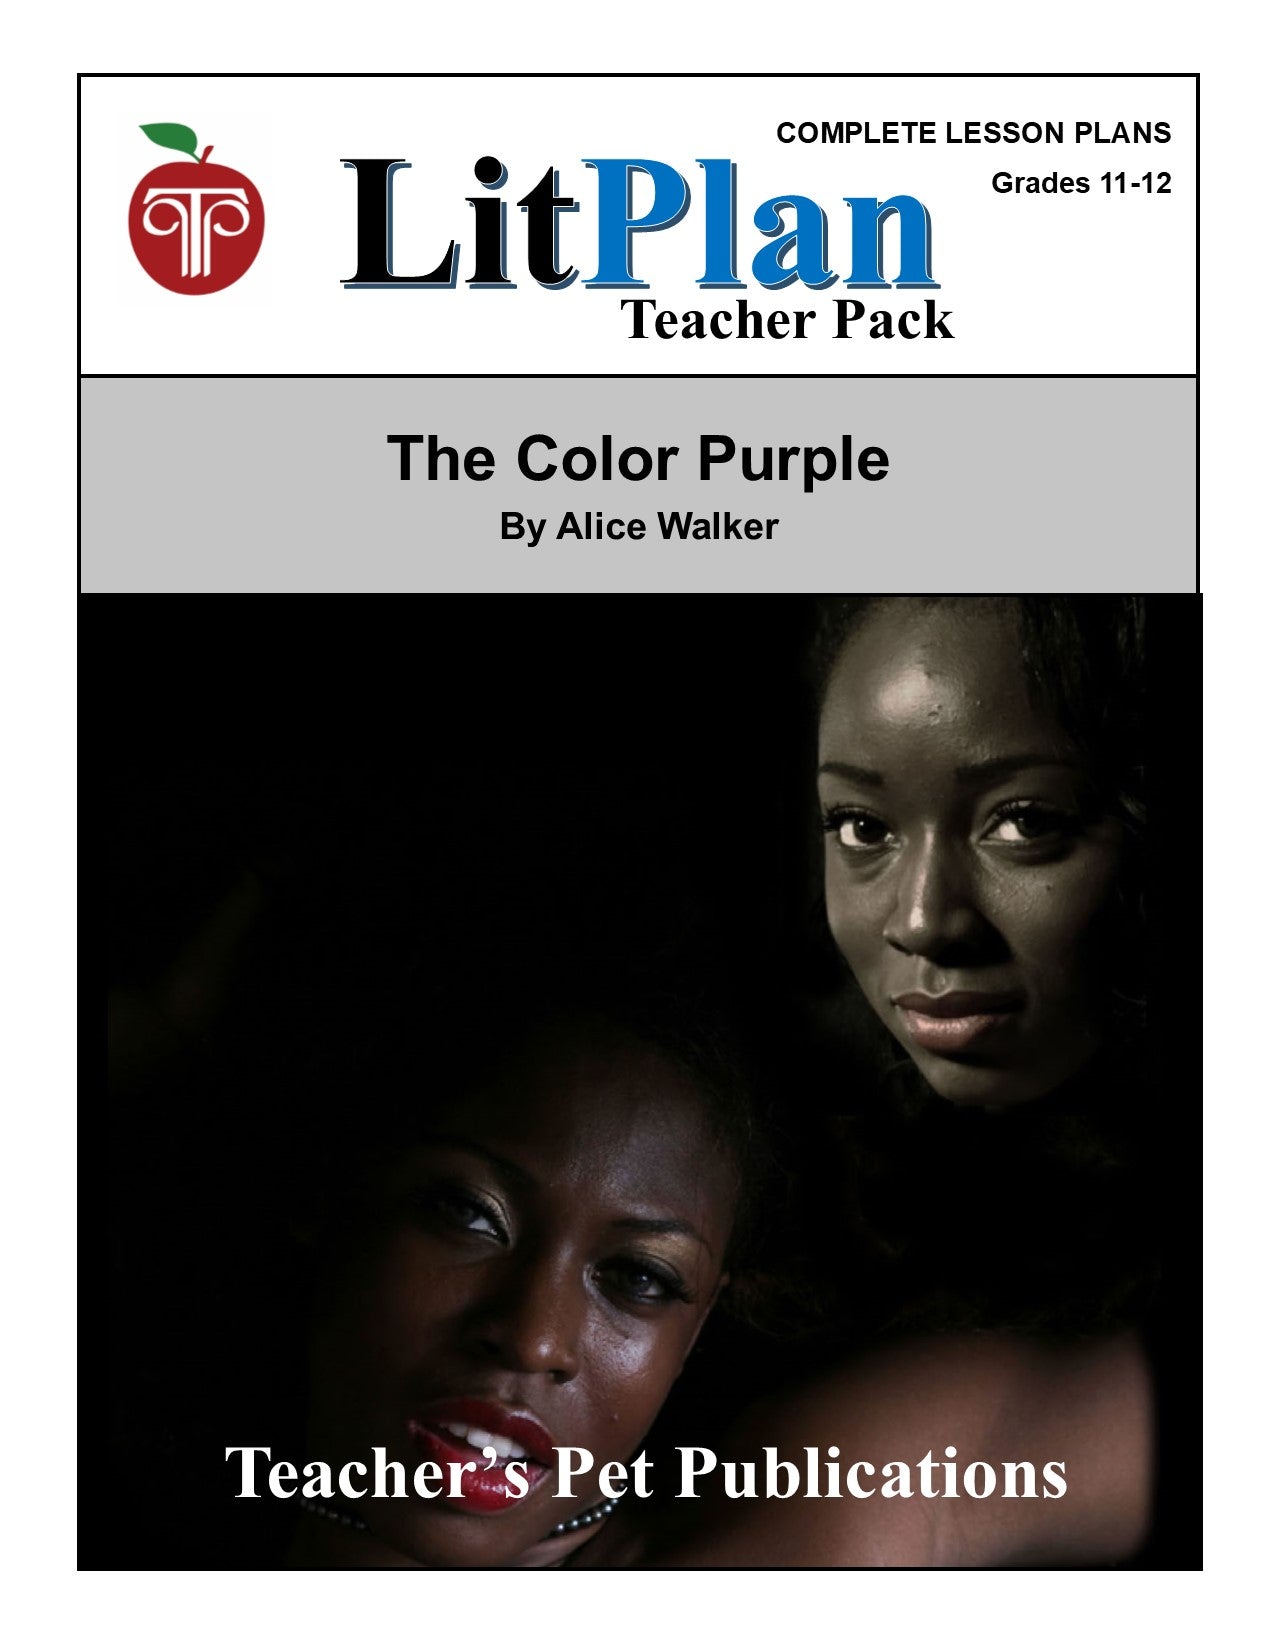 The Color Purple: LitPlan Teacher Pack Grades 11-12